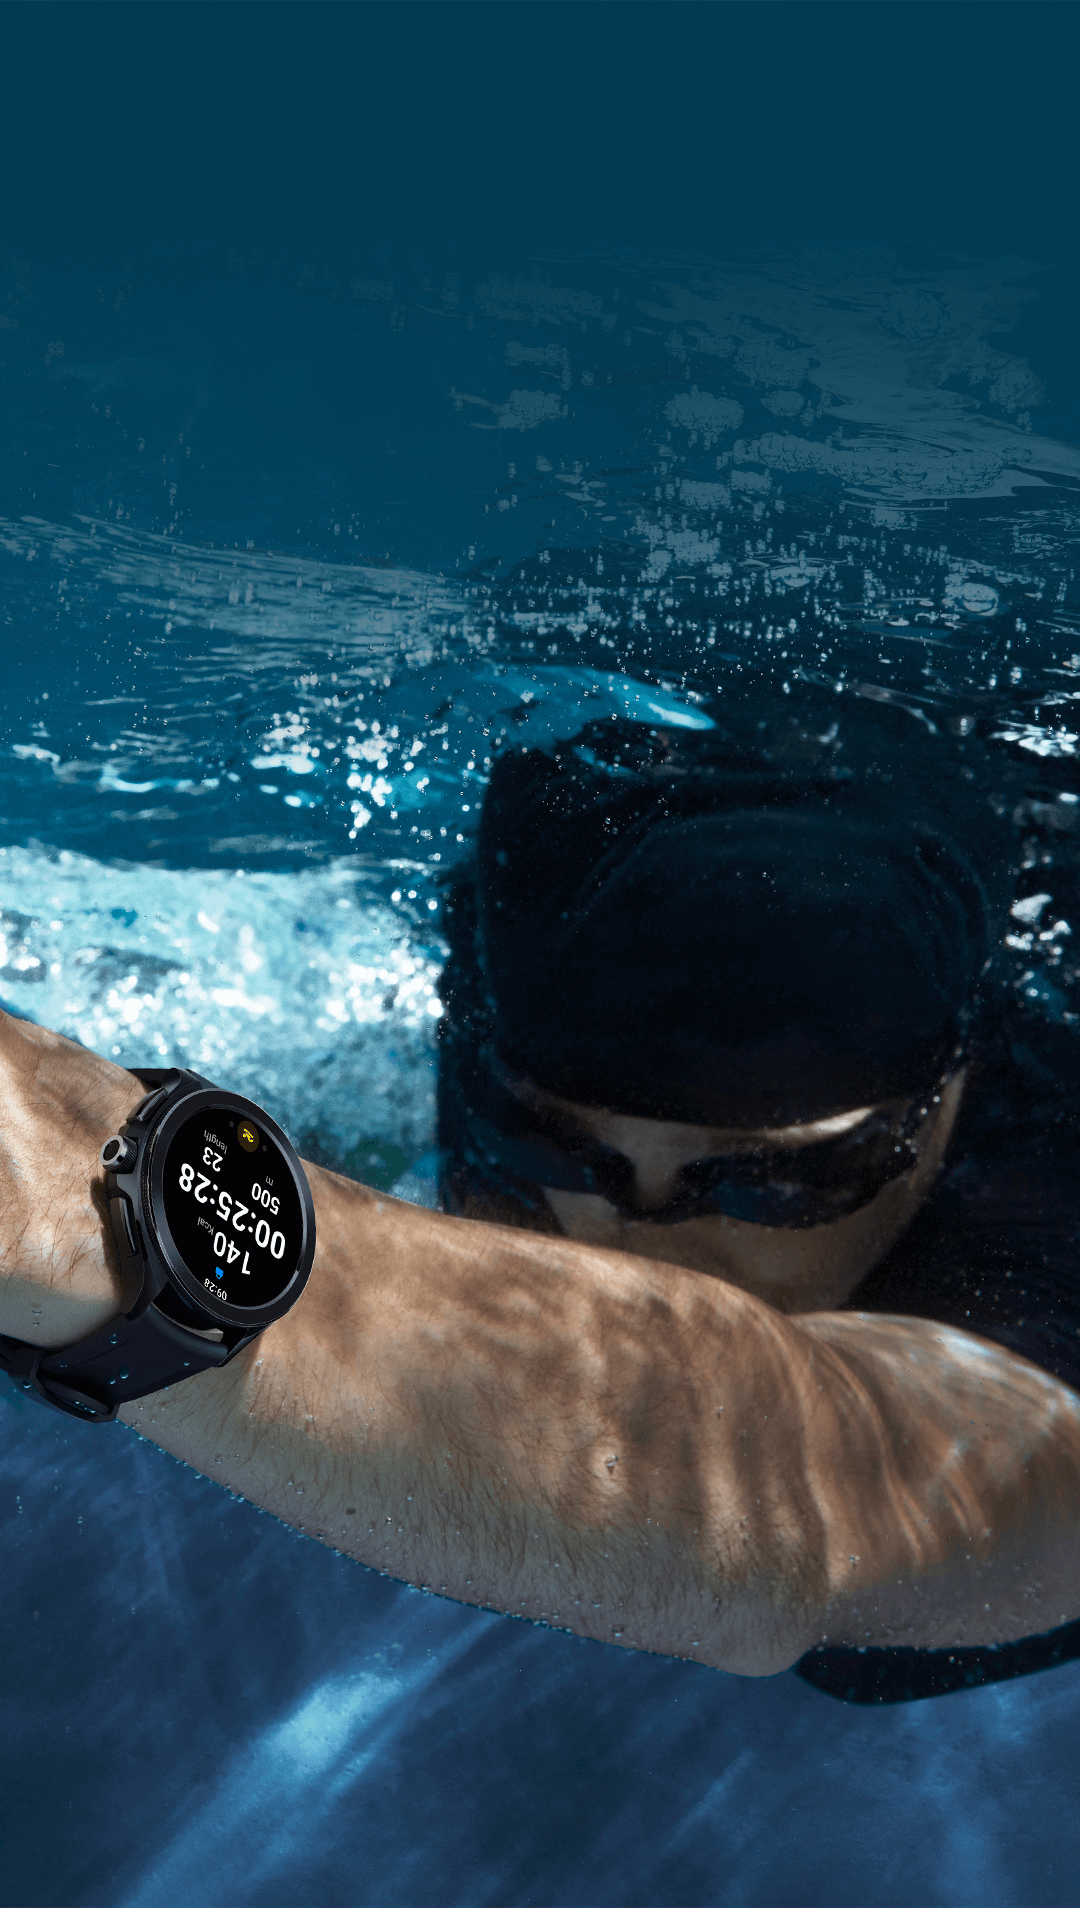 Xiaomi Watch 2 Pro LTE 1.43 AMOLED Waterproof (5ATM) By FedEx